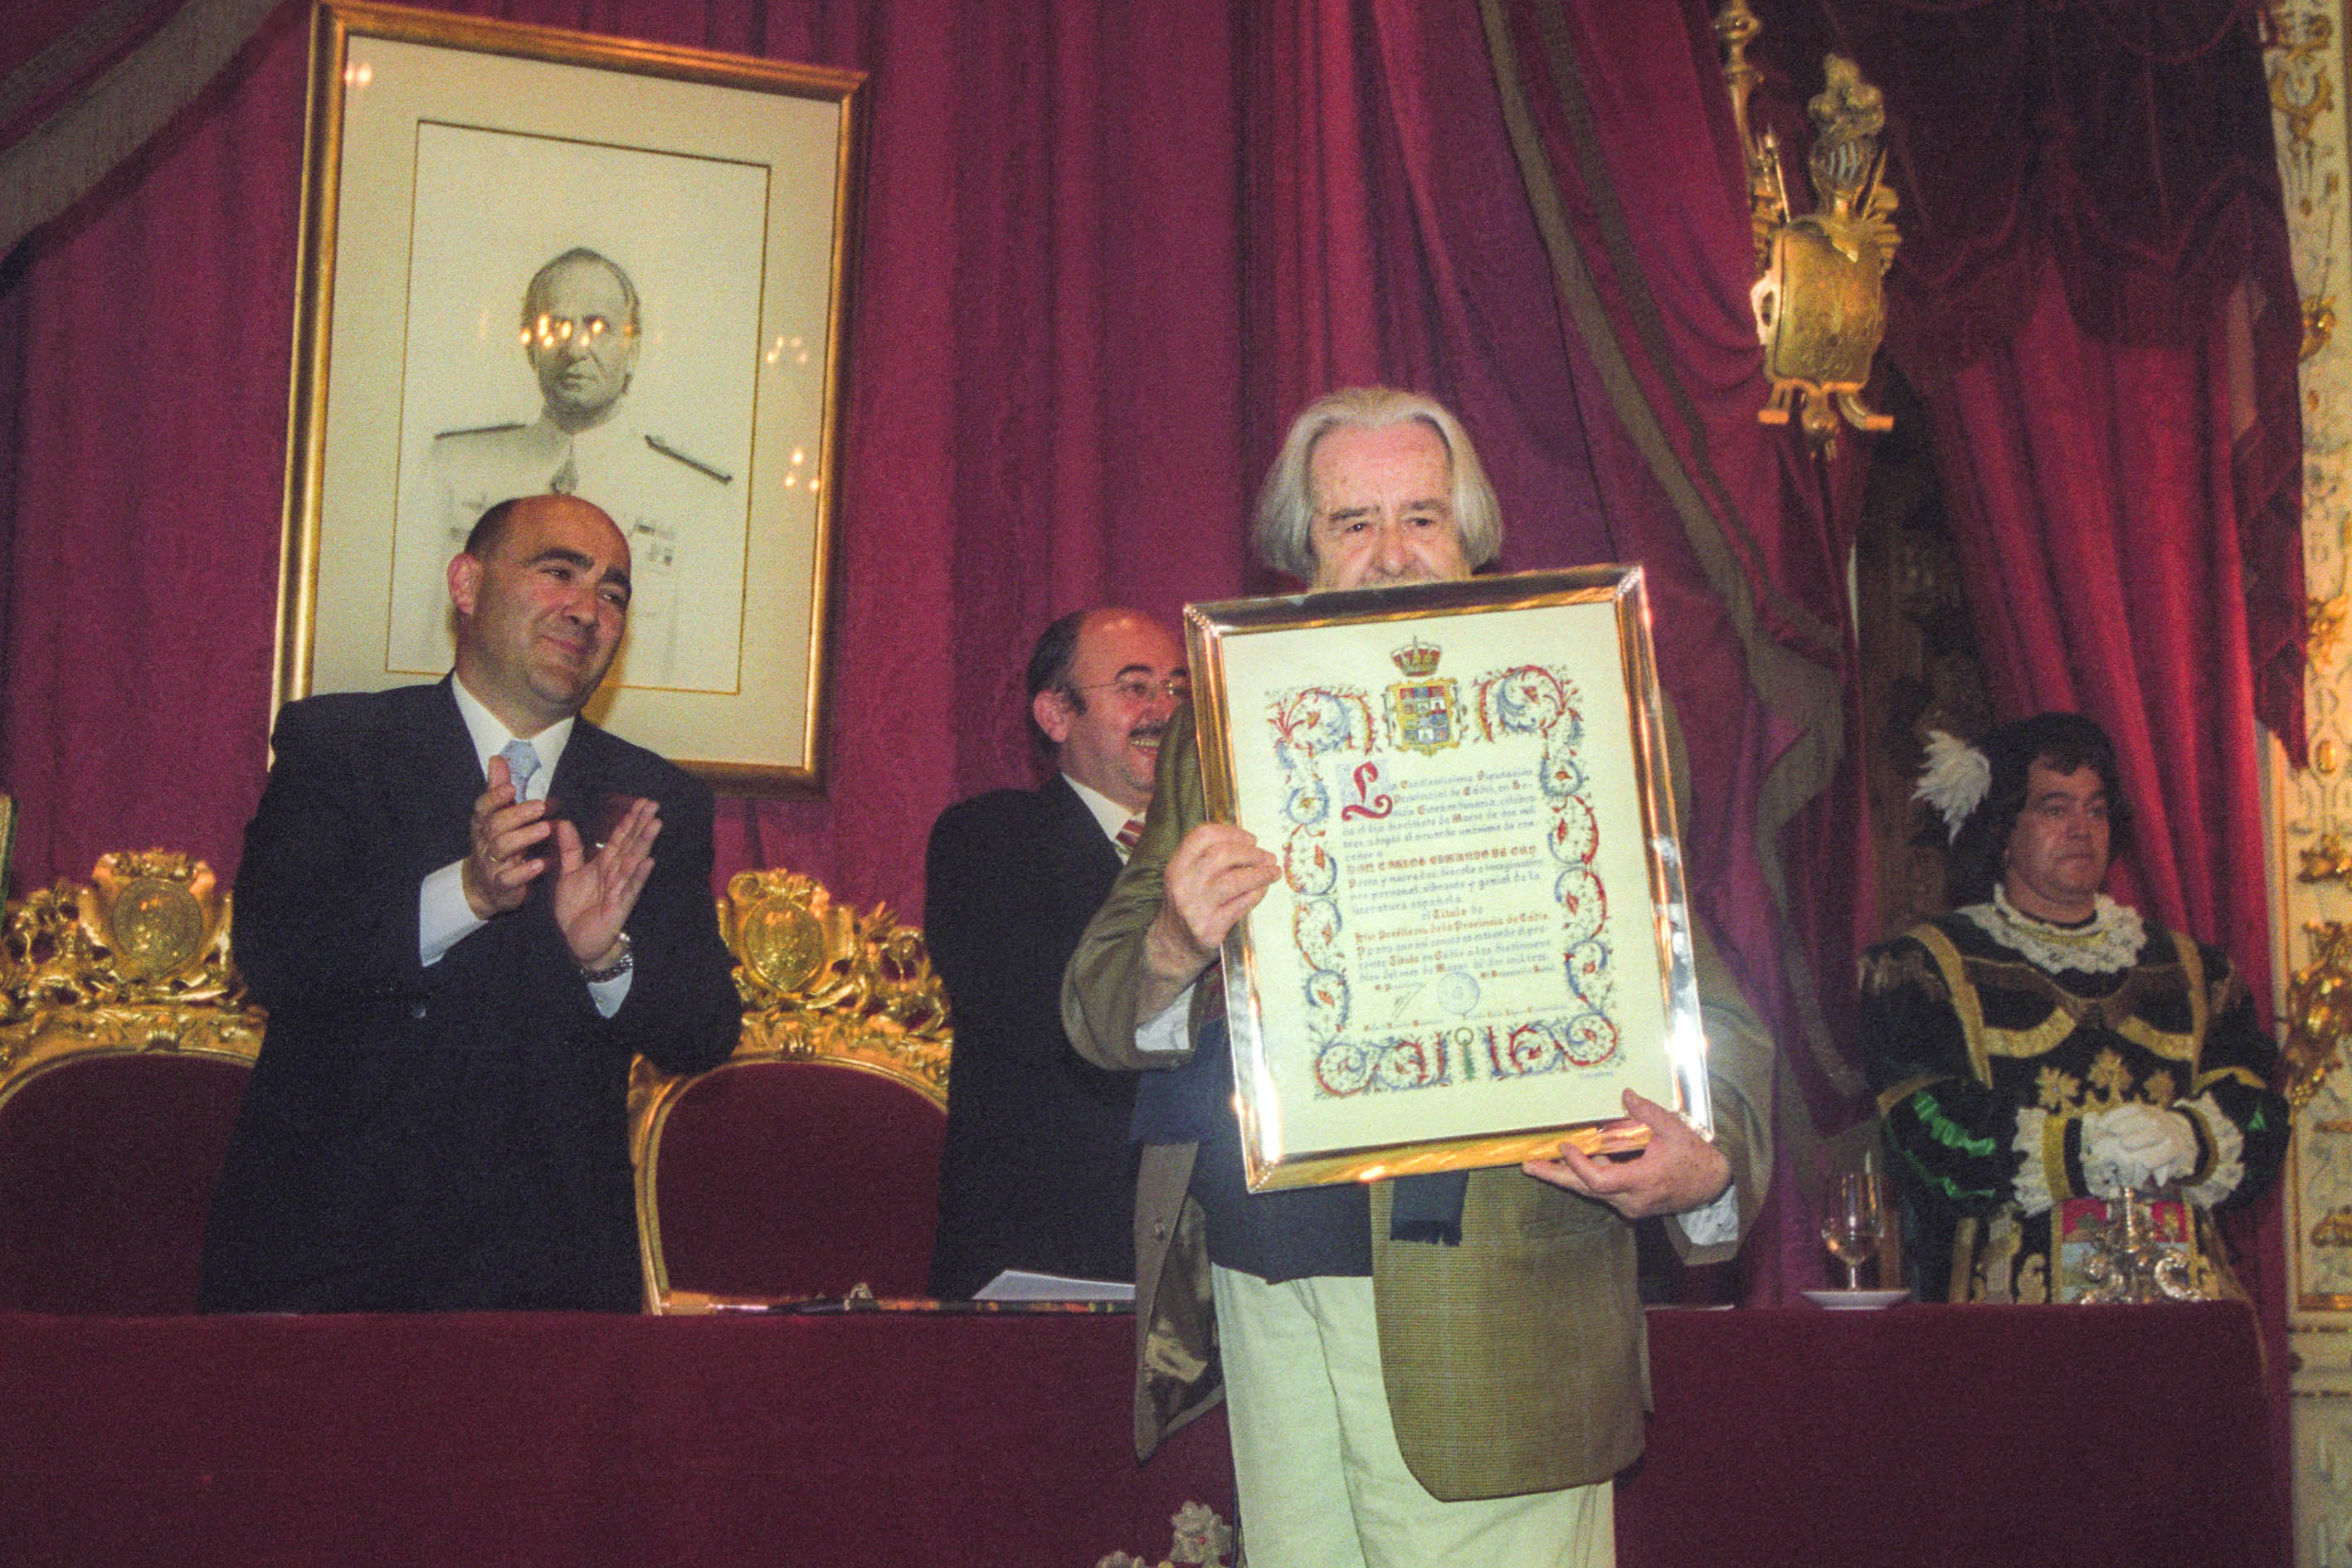 2003 Carlos Edmundo de Ory